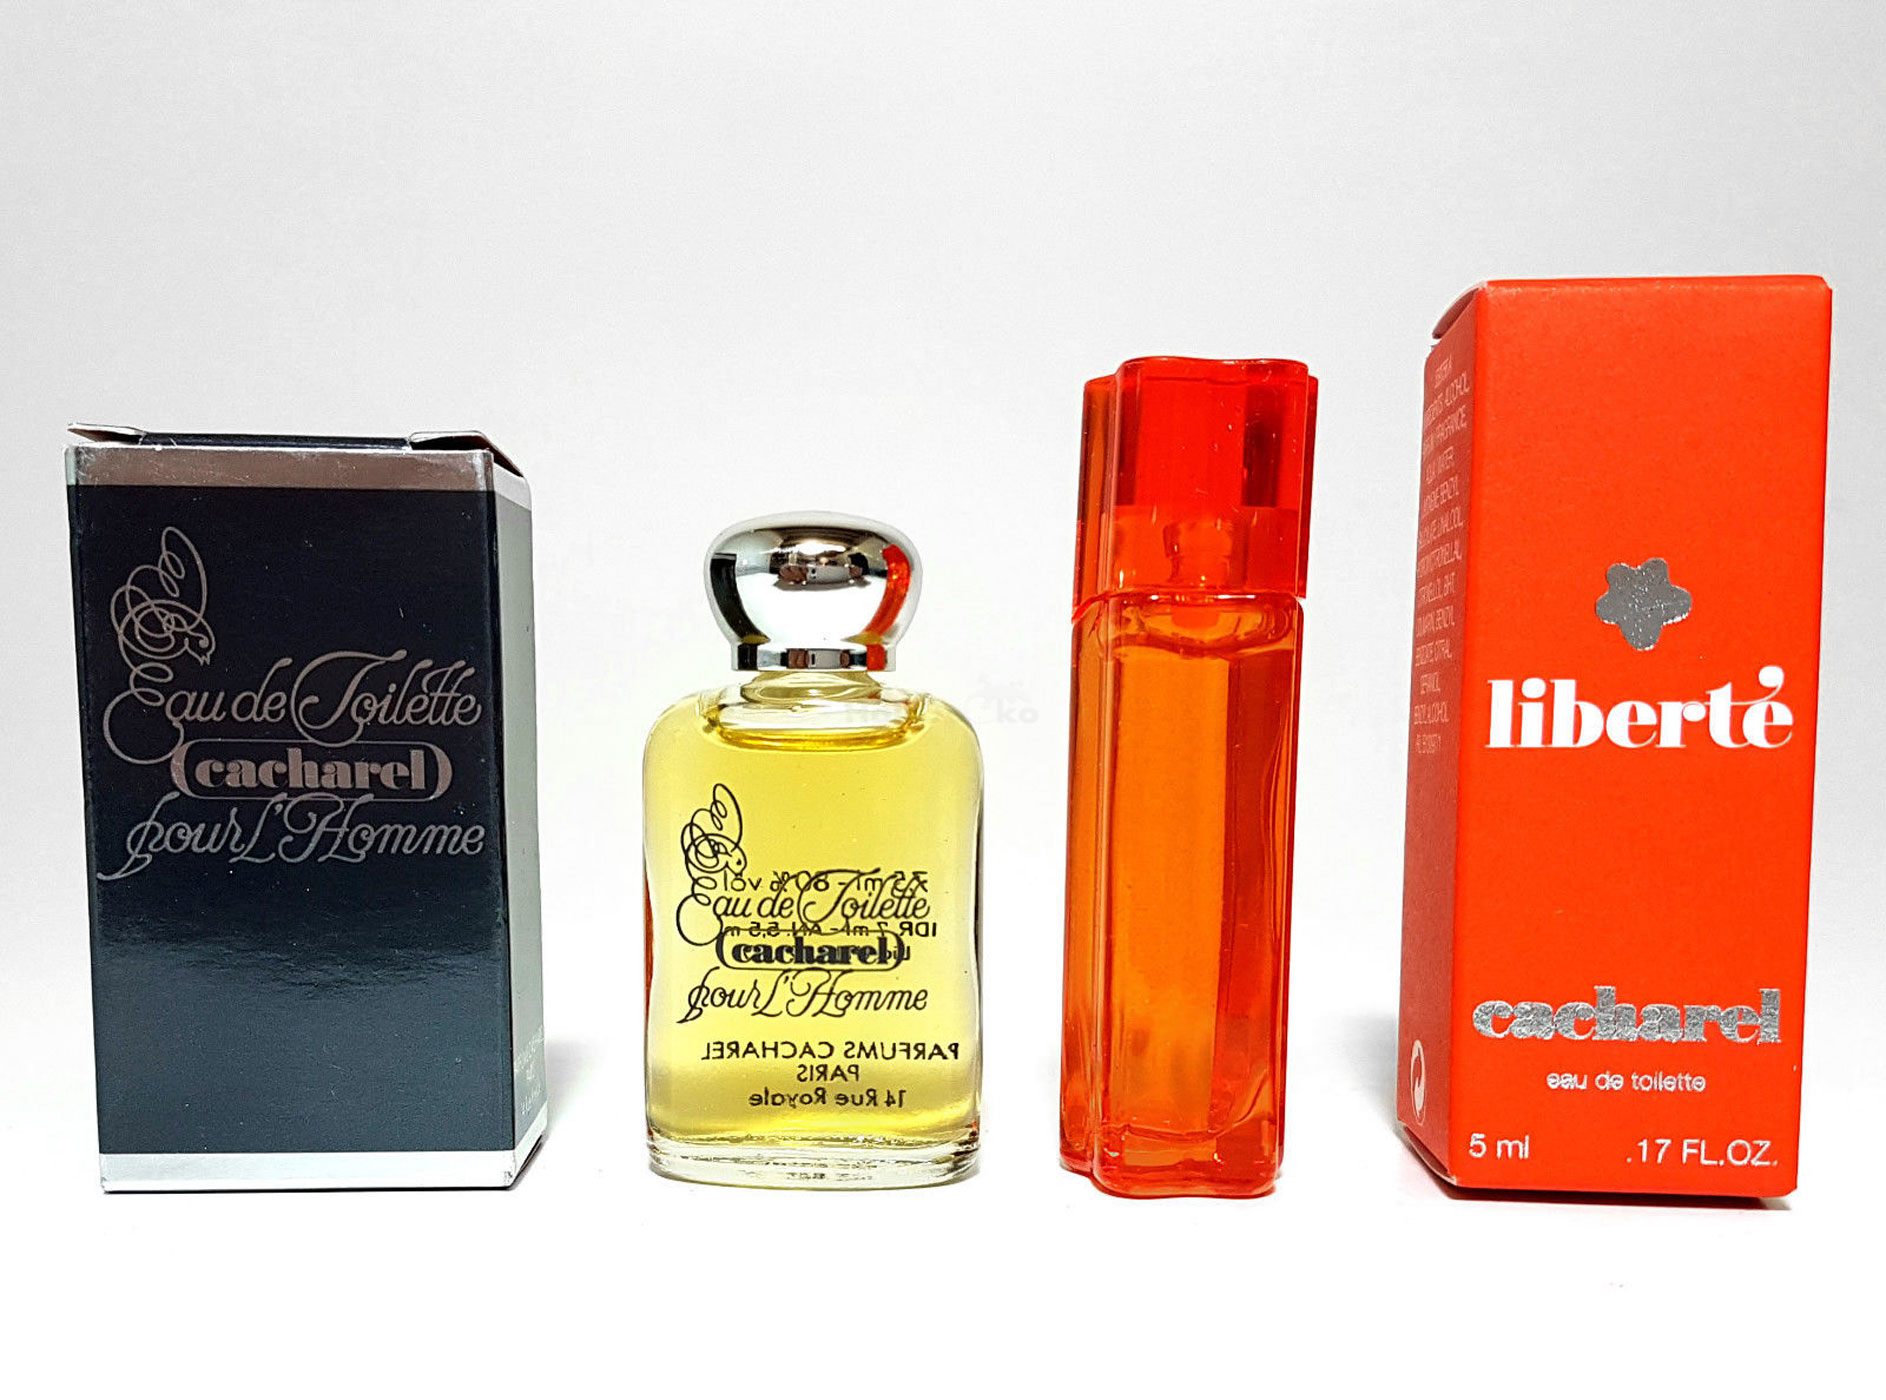 Cacharel Parfum Miniaturen Set - Cacharel EdT Eau de Toilette Pour Homme Parfum Miniatur 7,5 Ml + Cacharel Liberte Miniatur 5 Ml EdT Eau de Toilette